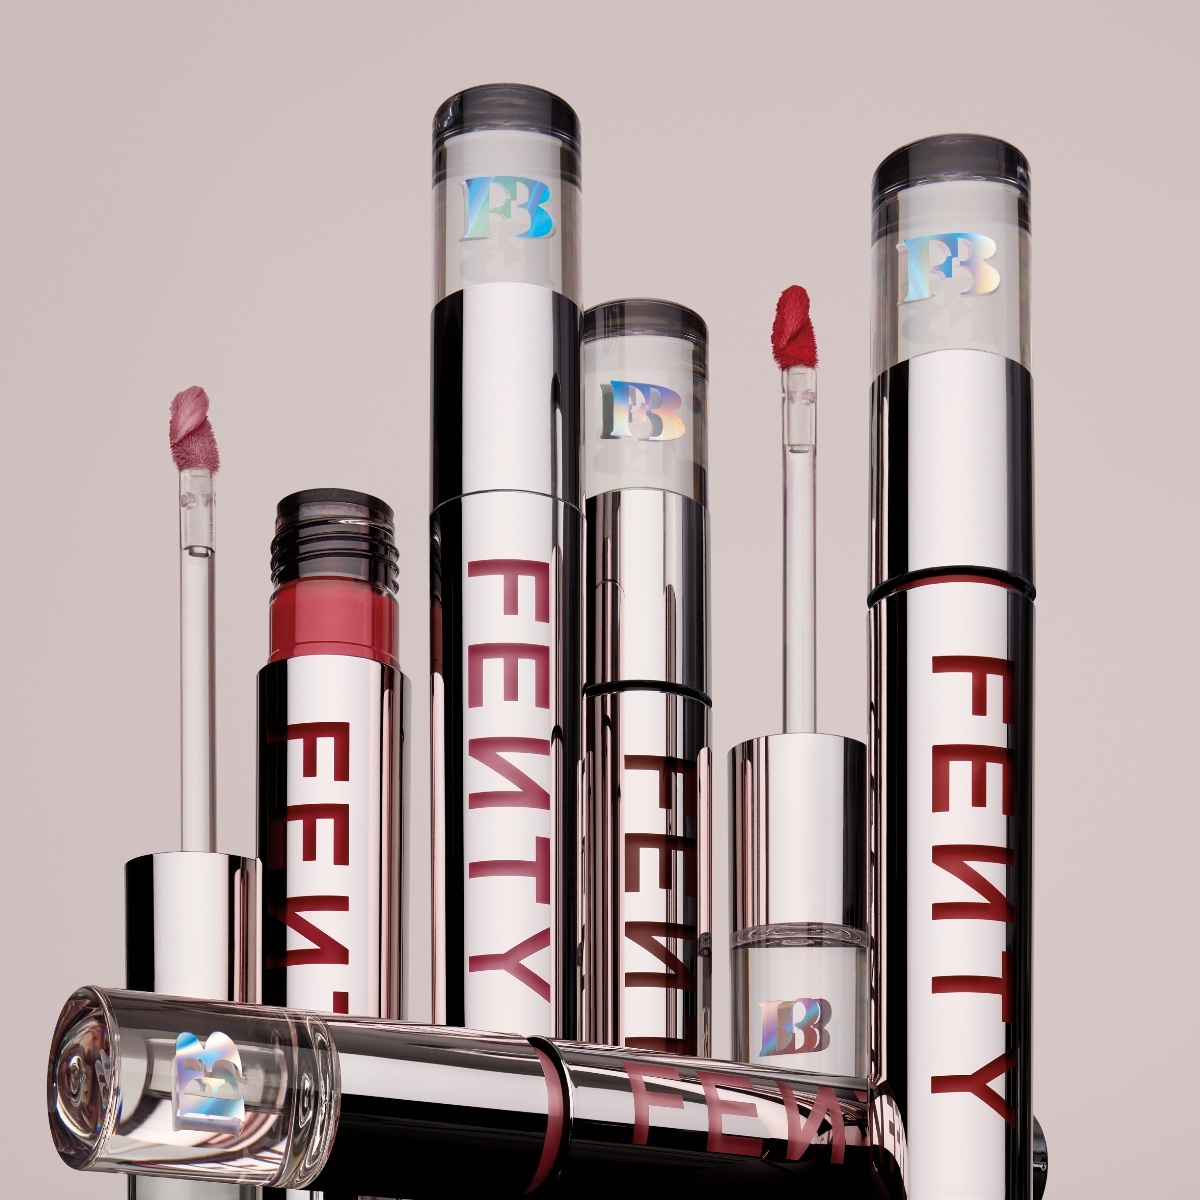 Fenty Beauty Icon Velvet Liquid Lipstick